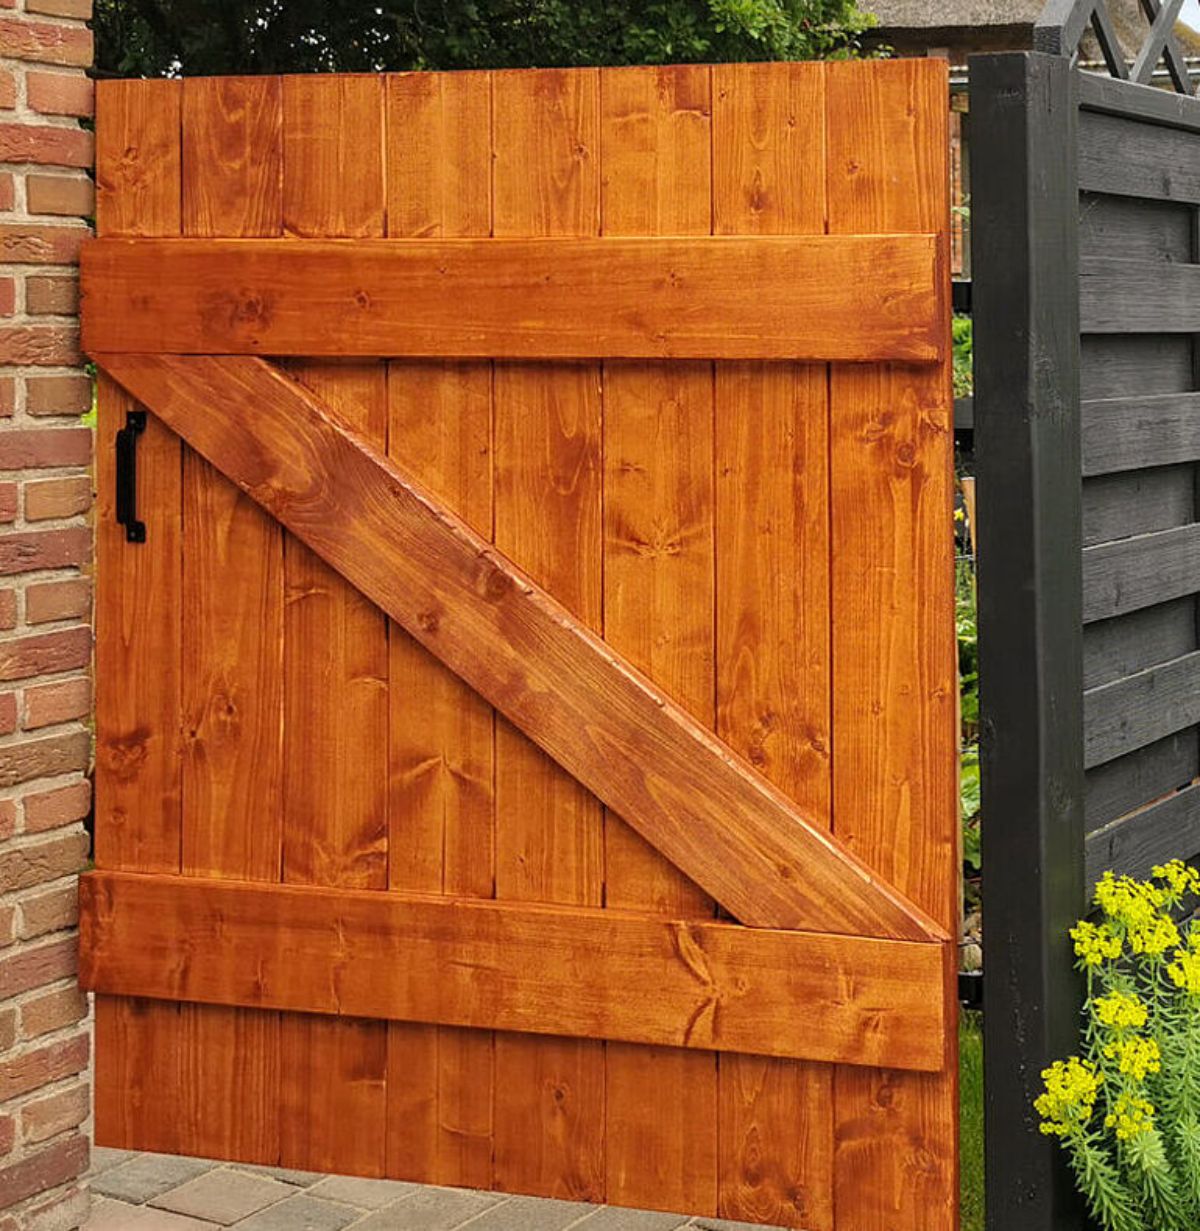 A Wooden DIY Garden Gate